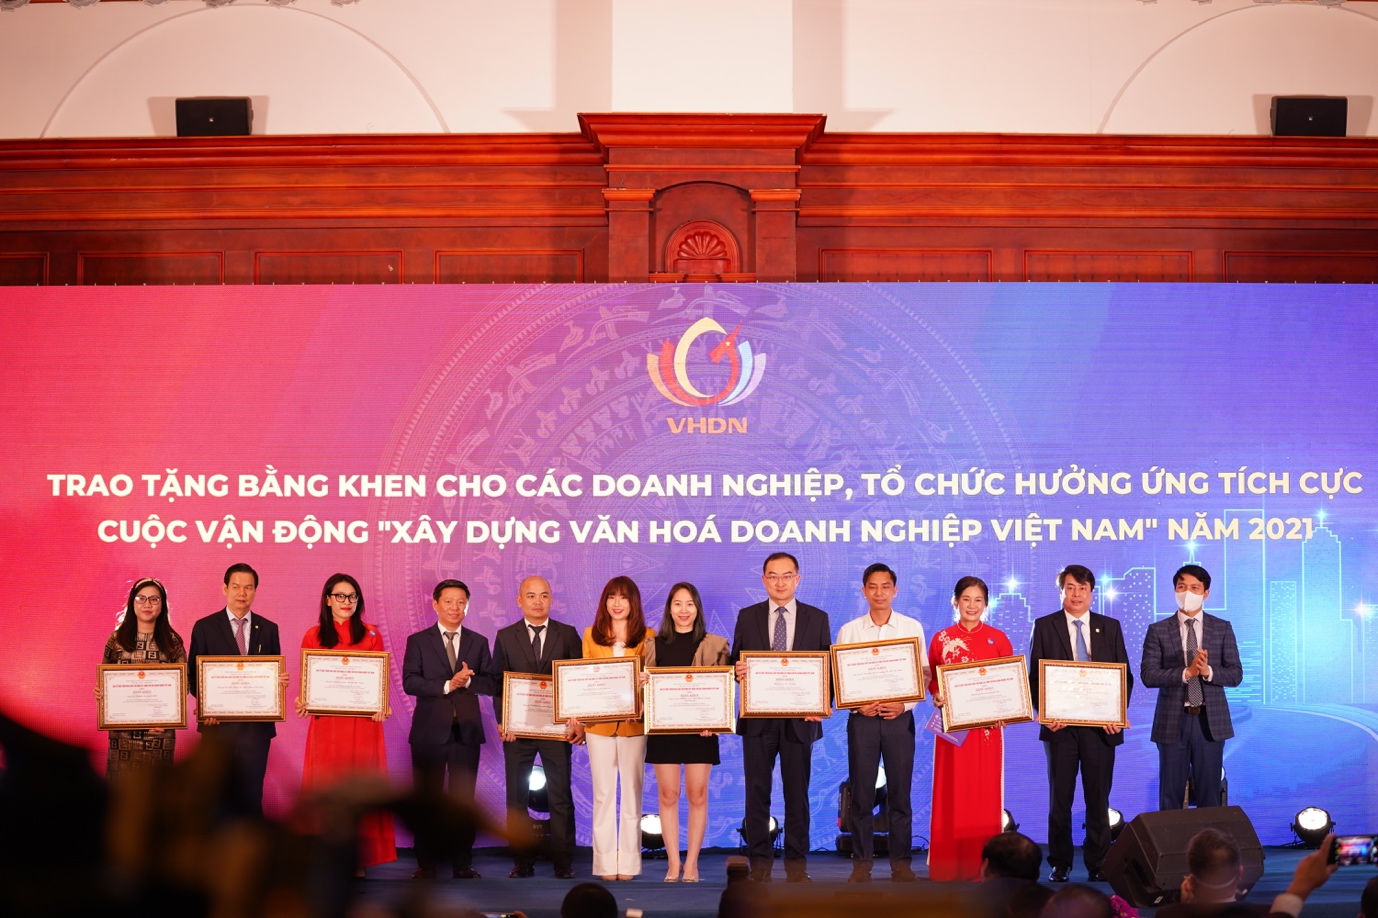 Huawei vinh dự nhận bằng khen Doanh nghiệp hưởng ứng tích cực  cuộc vận động “Xây dựng văn hoá doanh nghiệp Việt Nam” năm 2021